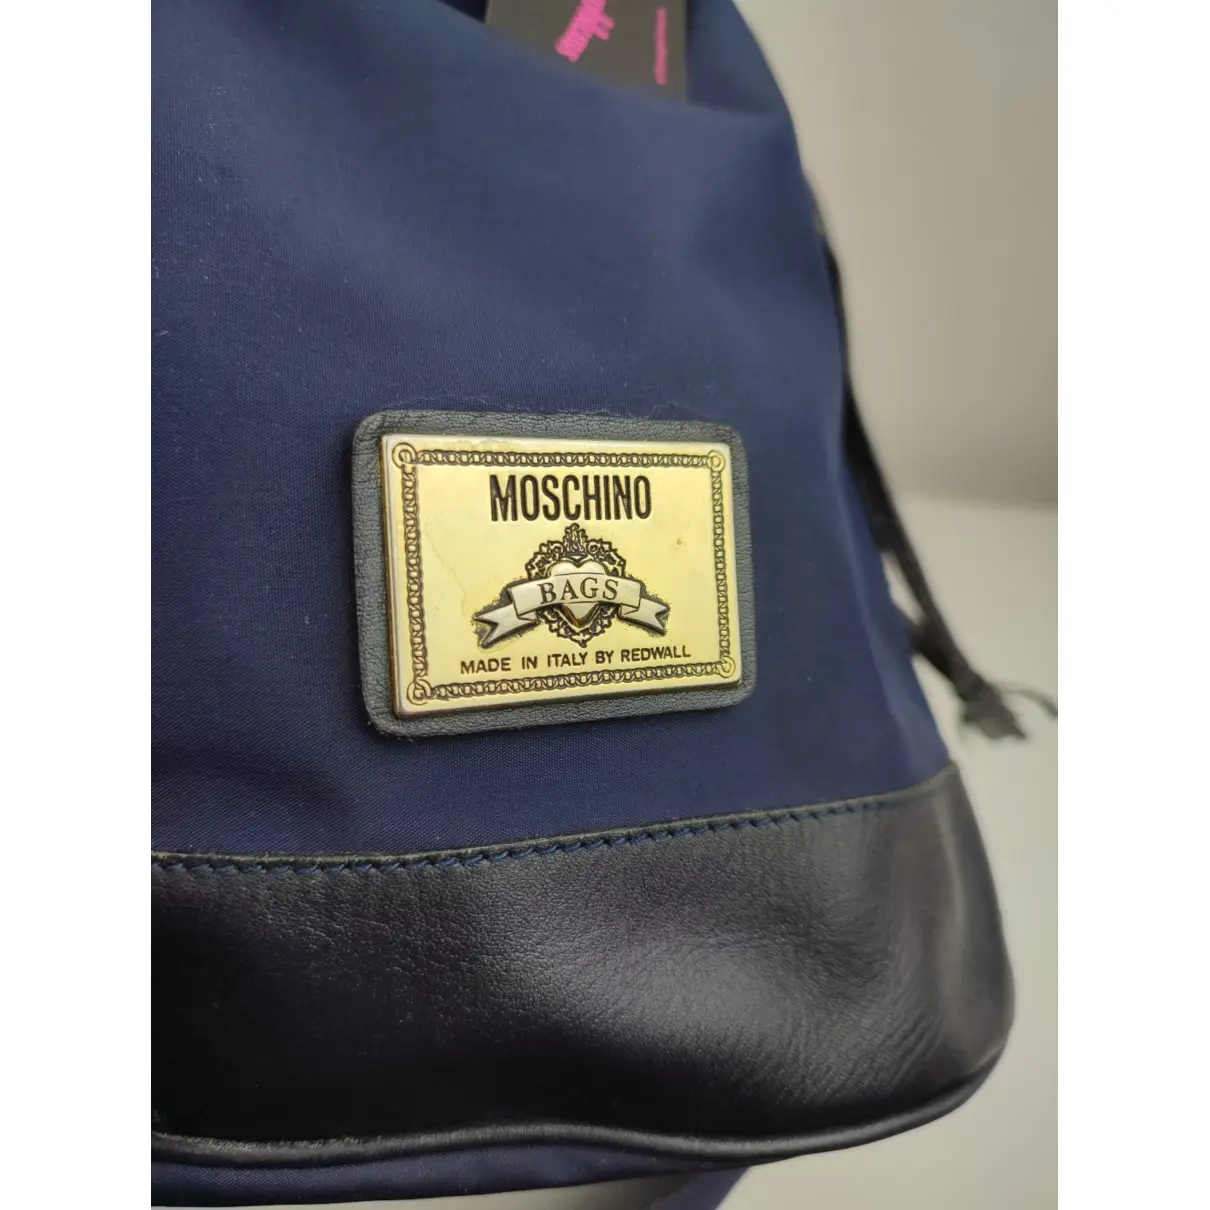 Buy Moschino Cloth handbag online - Vintage